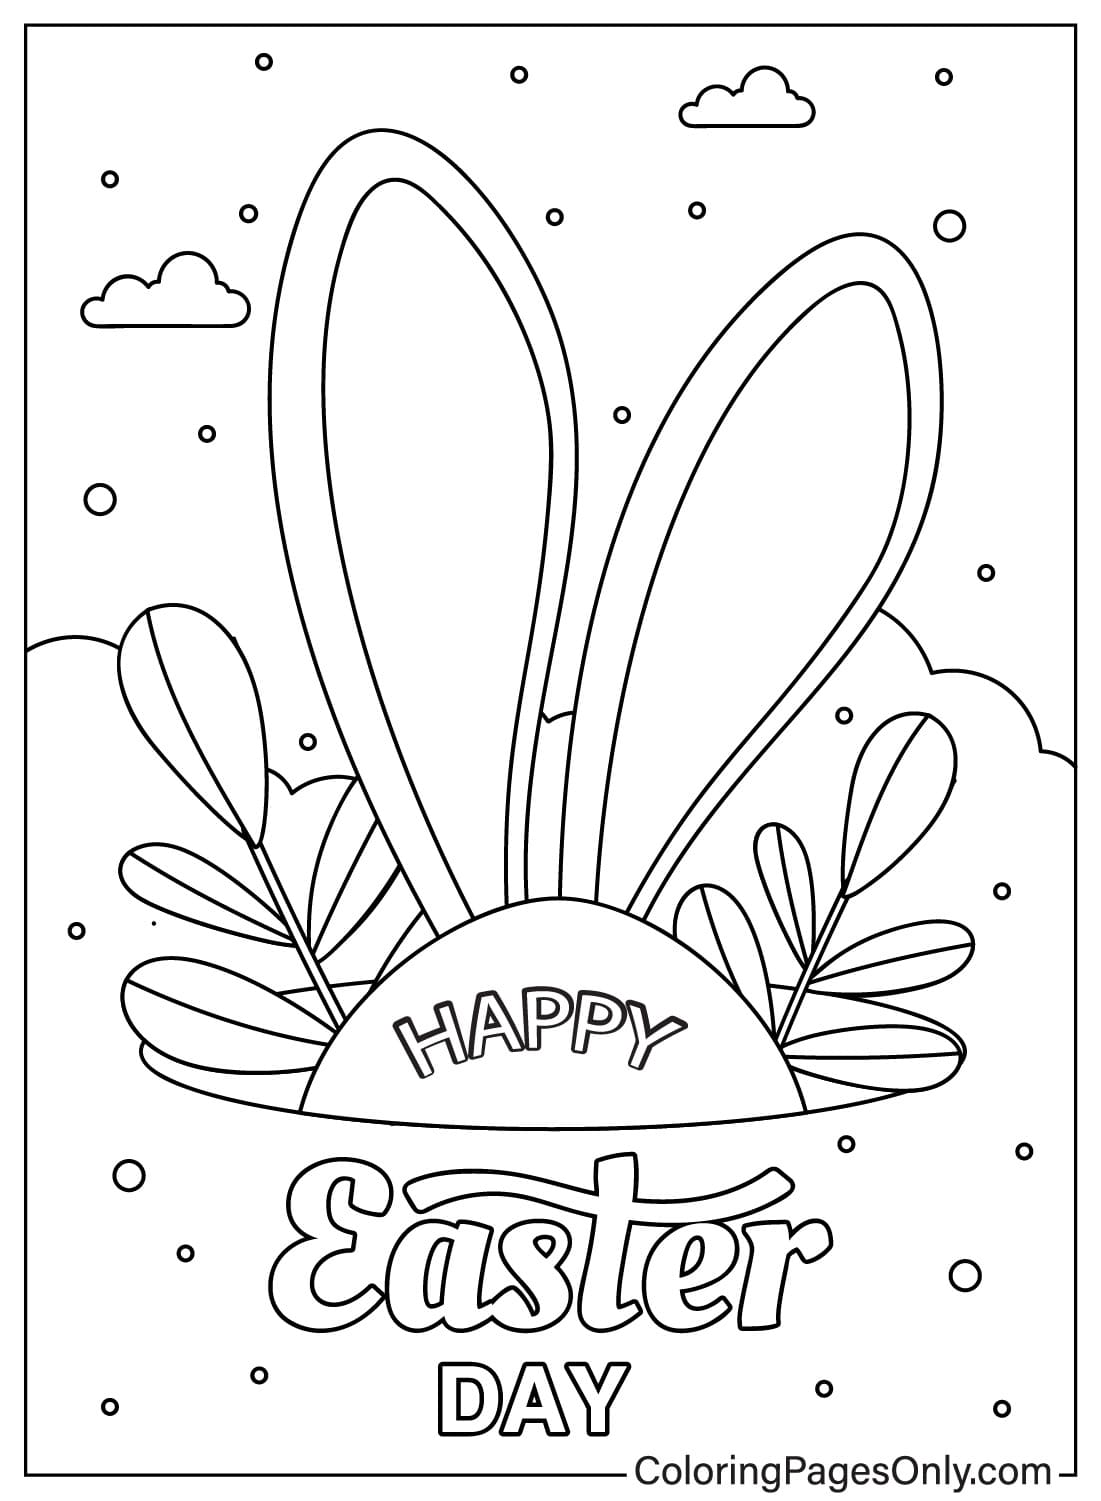 Página para colorir de cartão de Páscoa para impressão do cartão de Páscoa